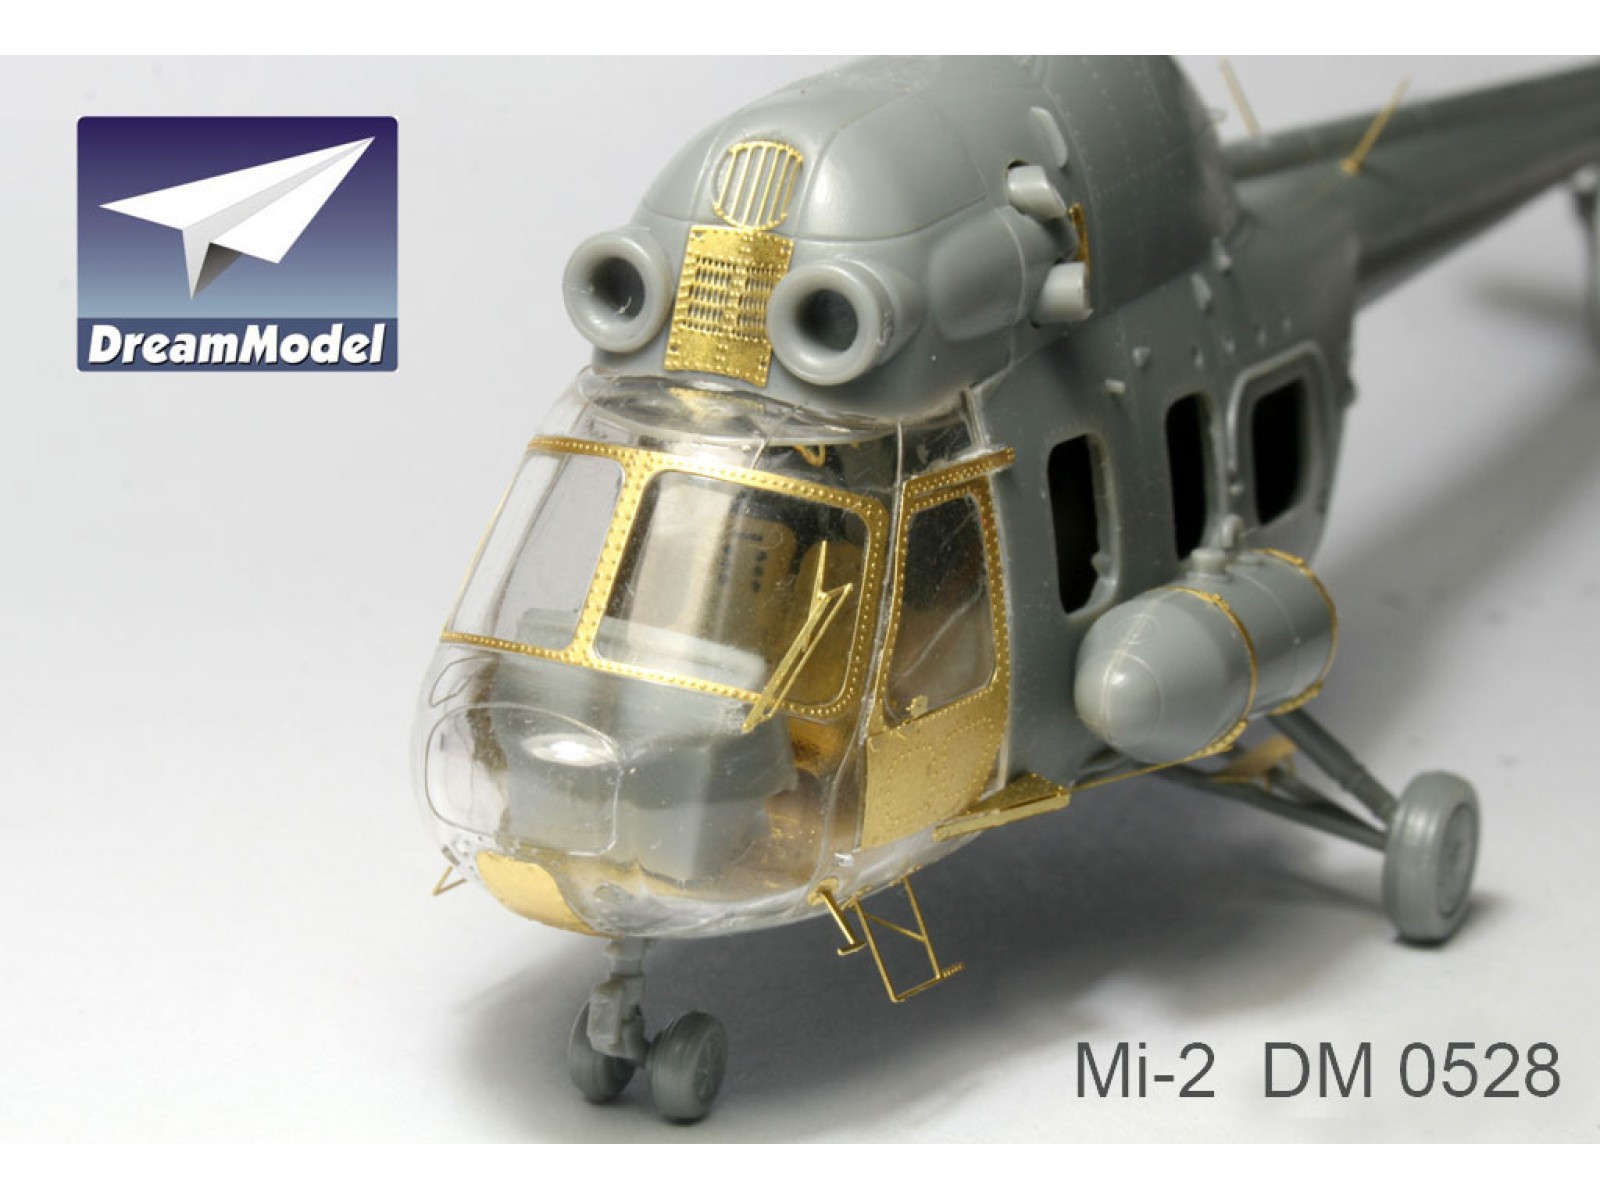 NEUF 1/72 soviétique Hélicoptère Mi-2 Mil-2 mise à jour Détail PE gravée pour Hobbyboss D528 